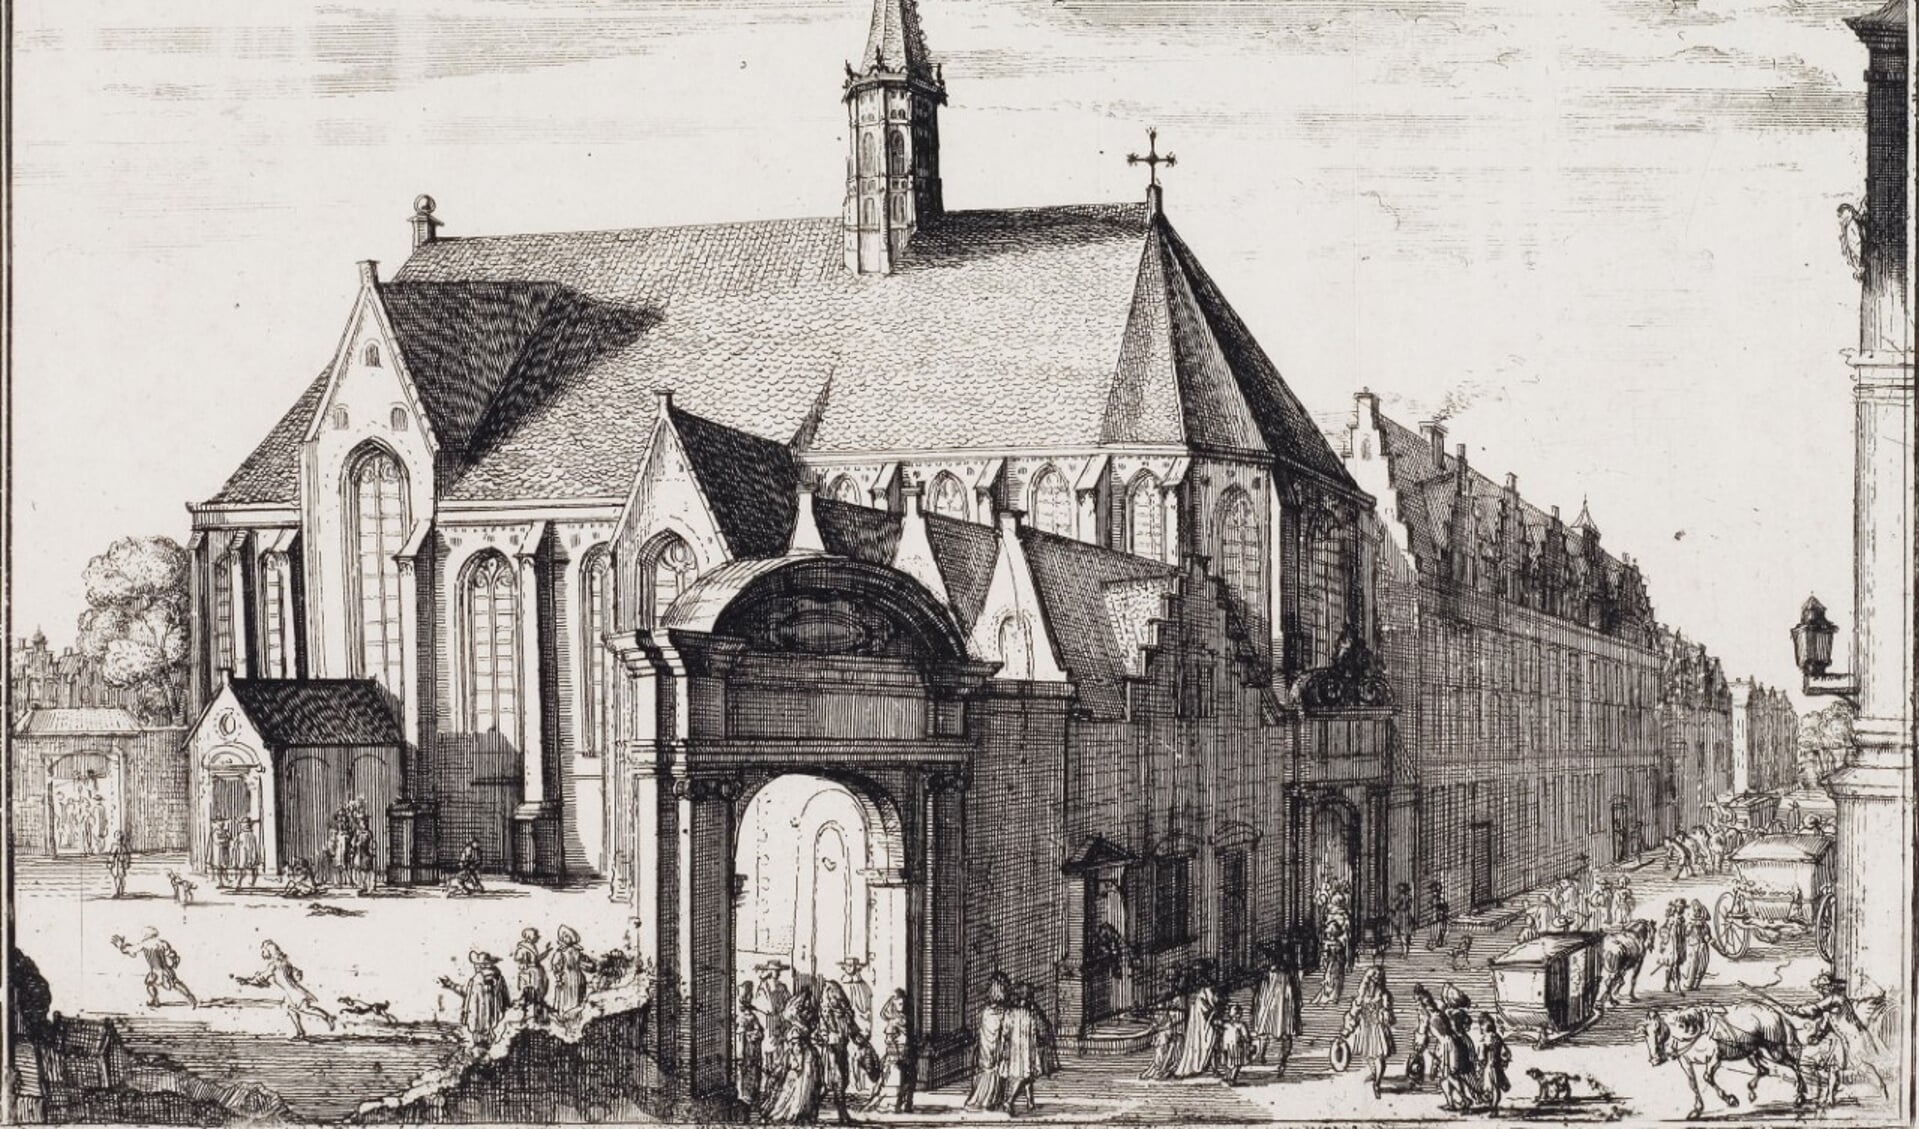 Rond 1500 was Haarlem een van de voornaamste kloostersteden in Noord-Europa. 